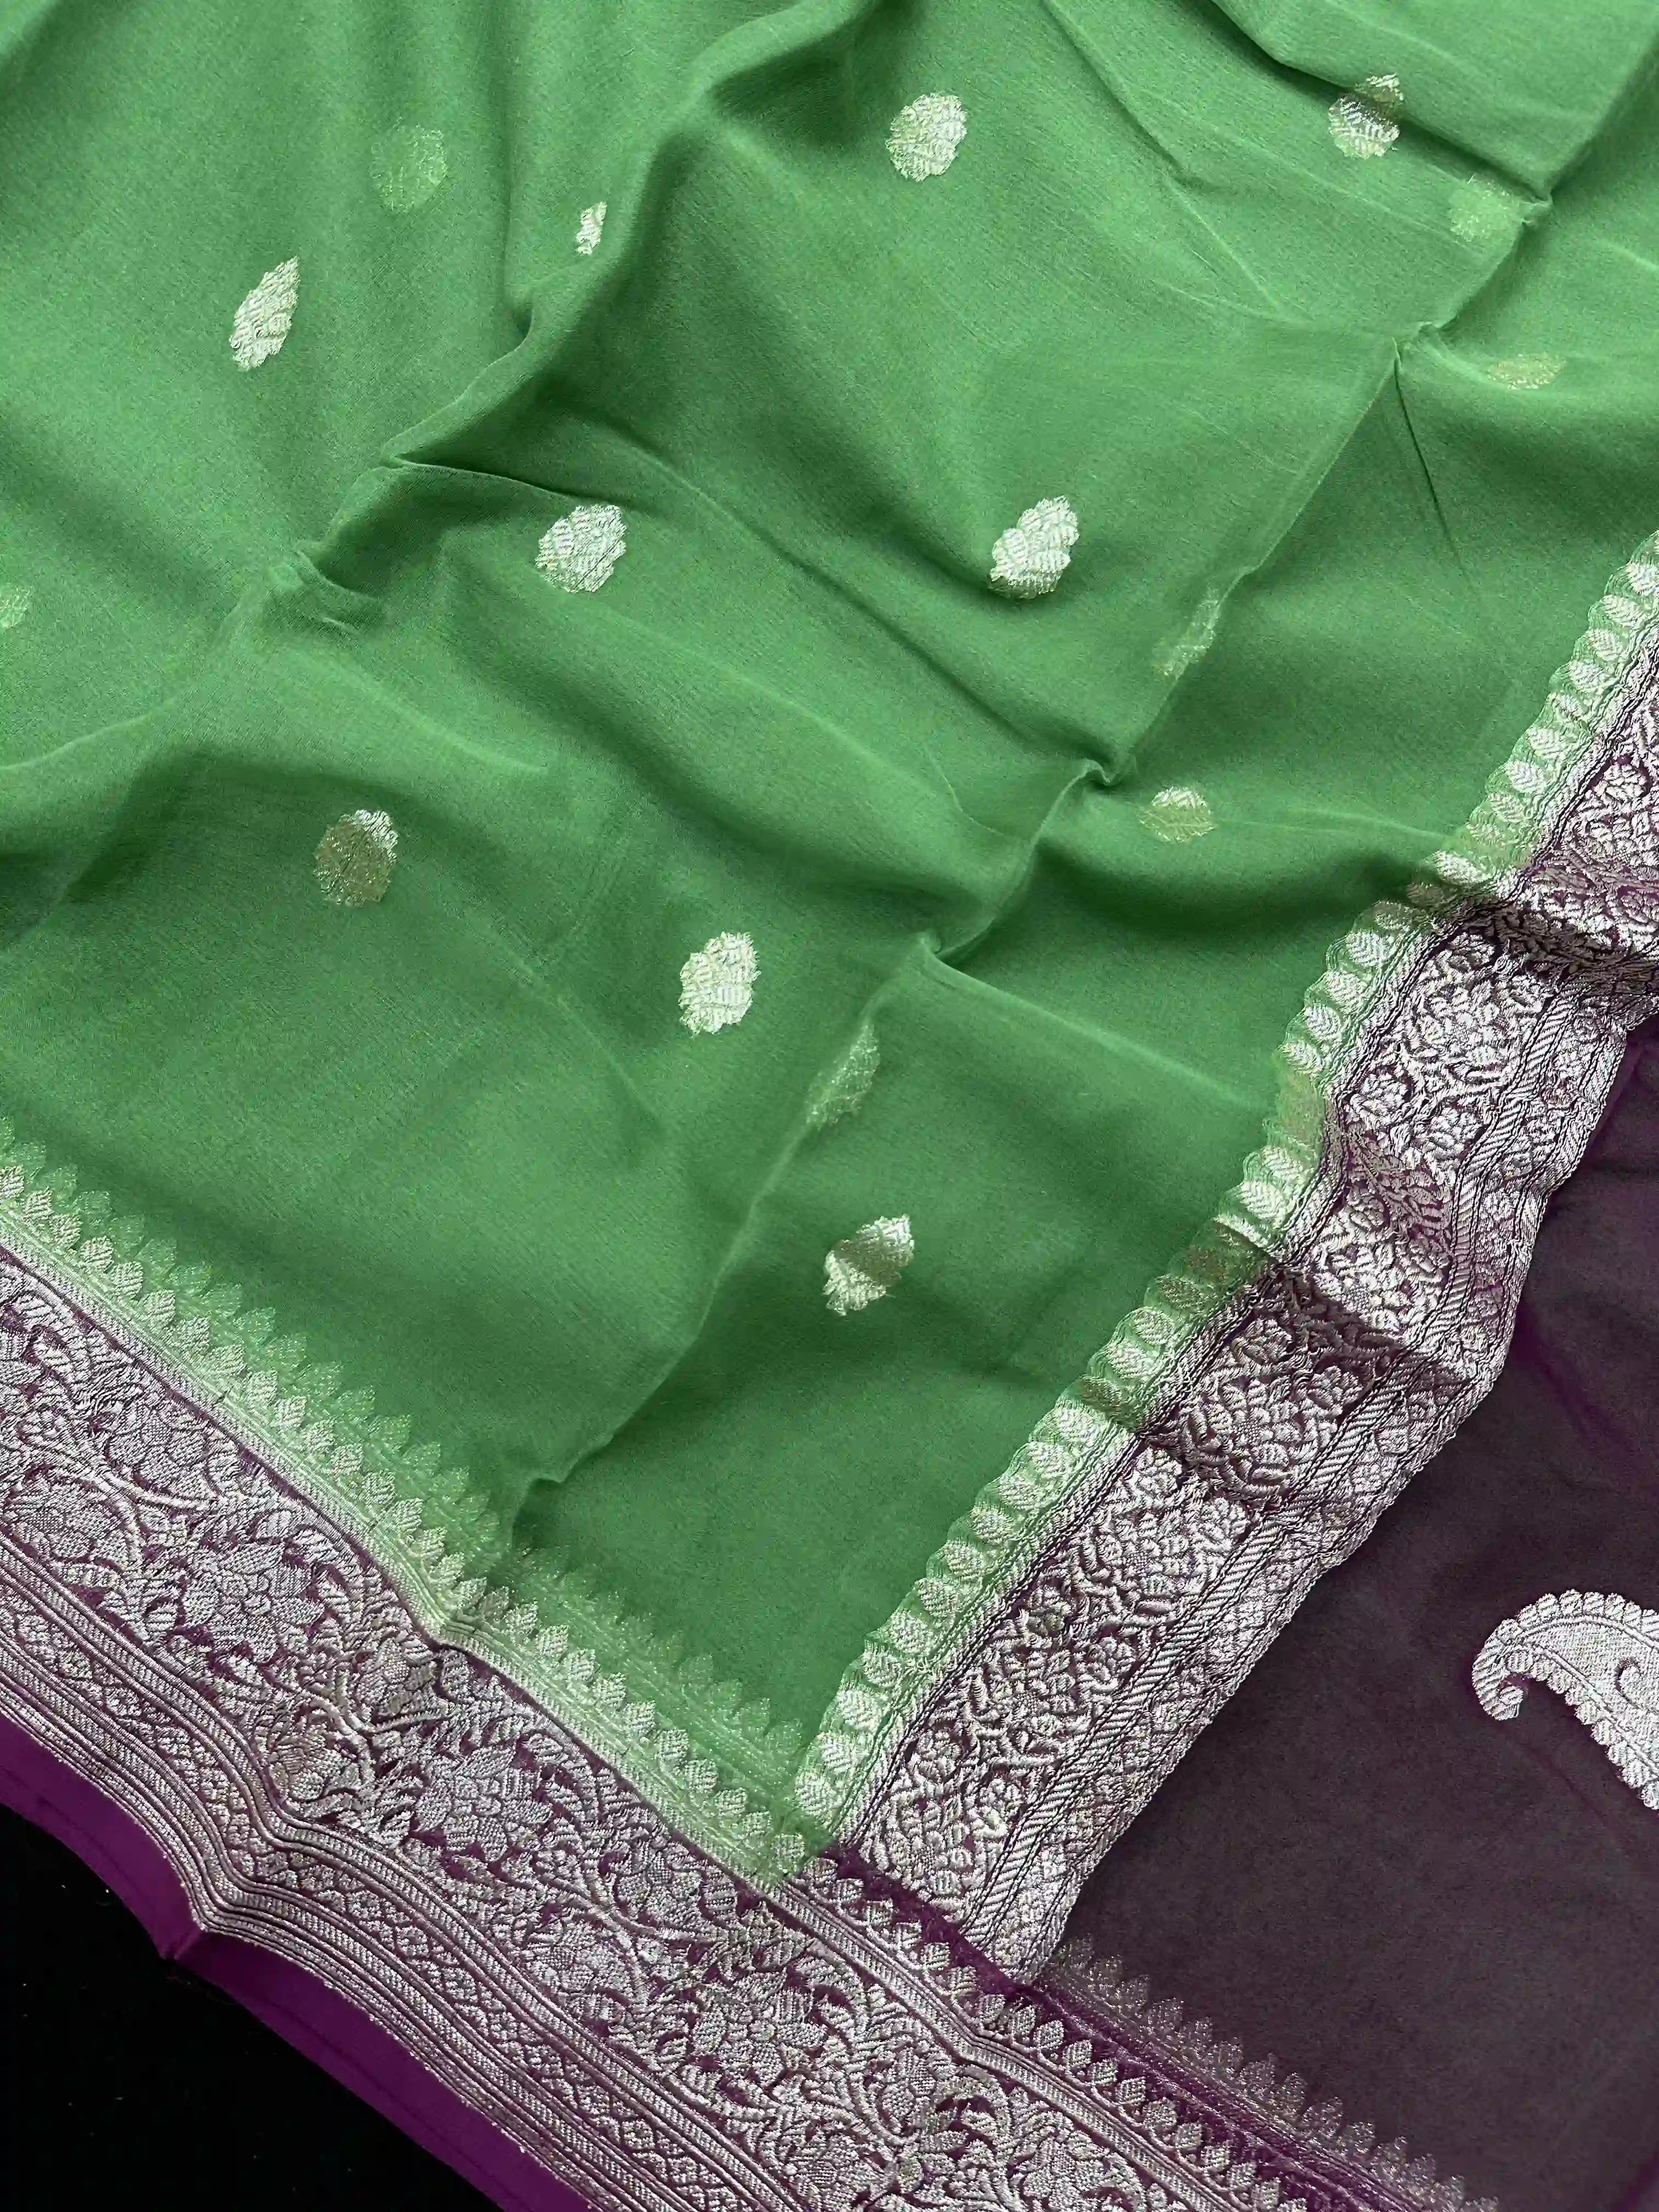 Banarasi Pure Khaddi Chiffon Silver Zari Matcha Green Colour Saree With Contrast Pink Blouse & Pallu